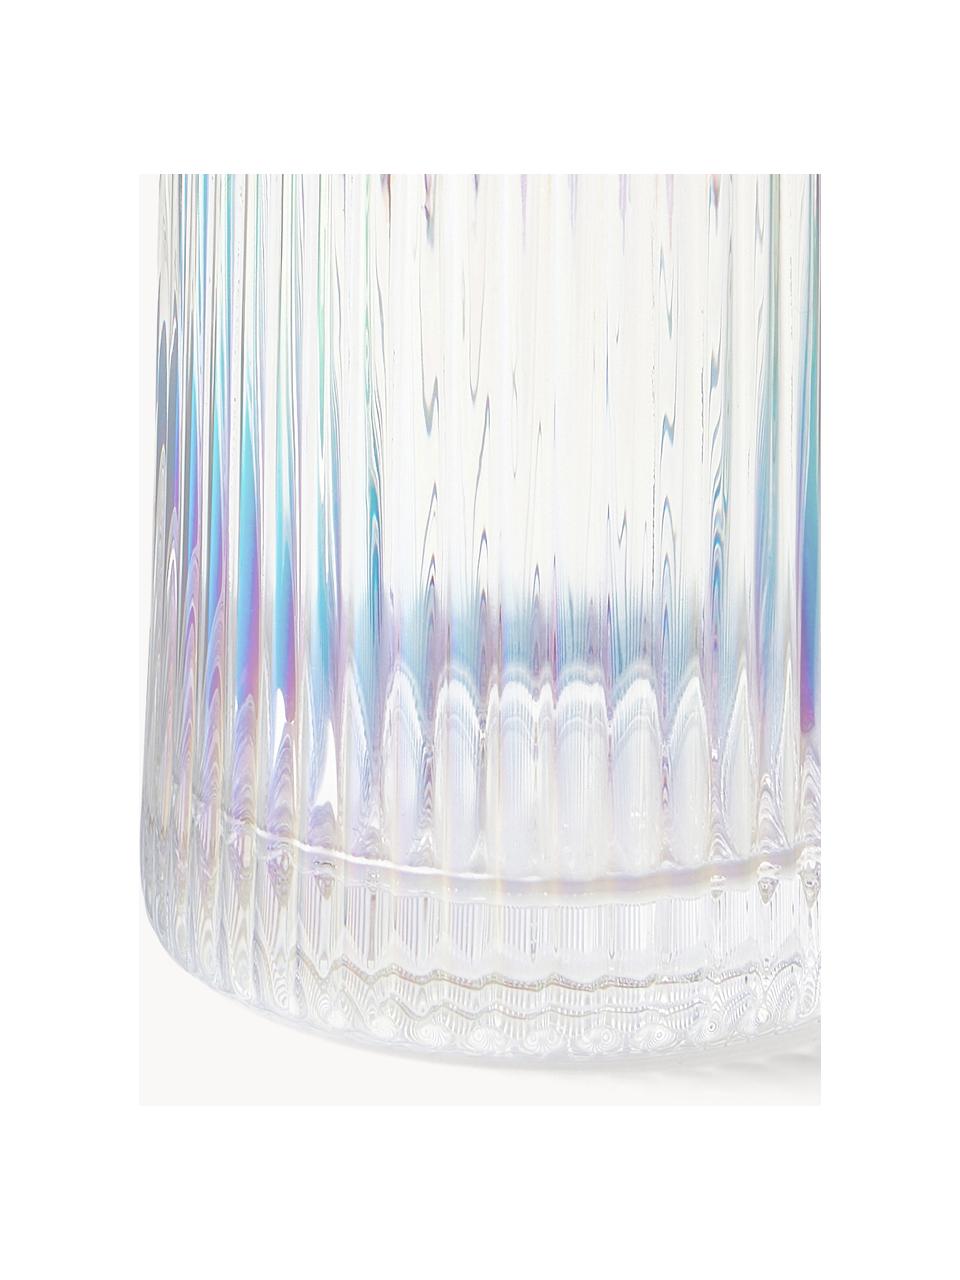 Wasserkaraffe Minna mit irisierender Oberfläche und Rillenrelief, 1.1 L, Transparent, irisierend, 1.1 L